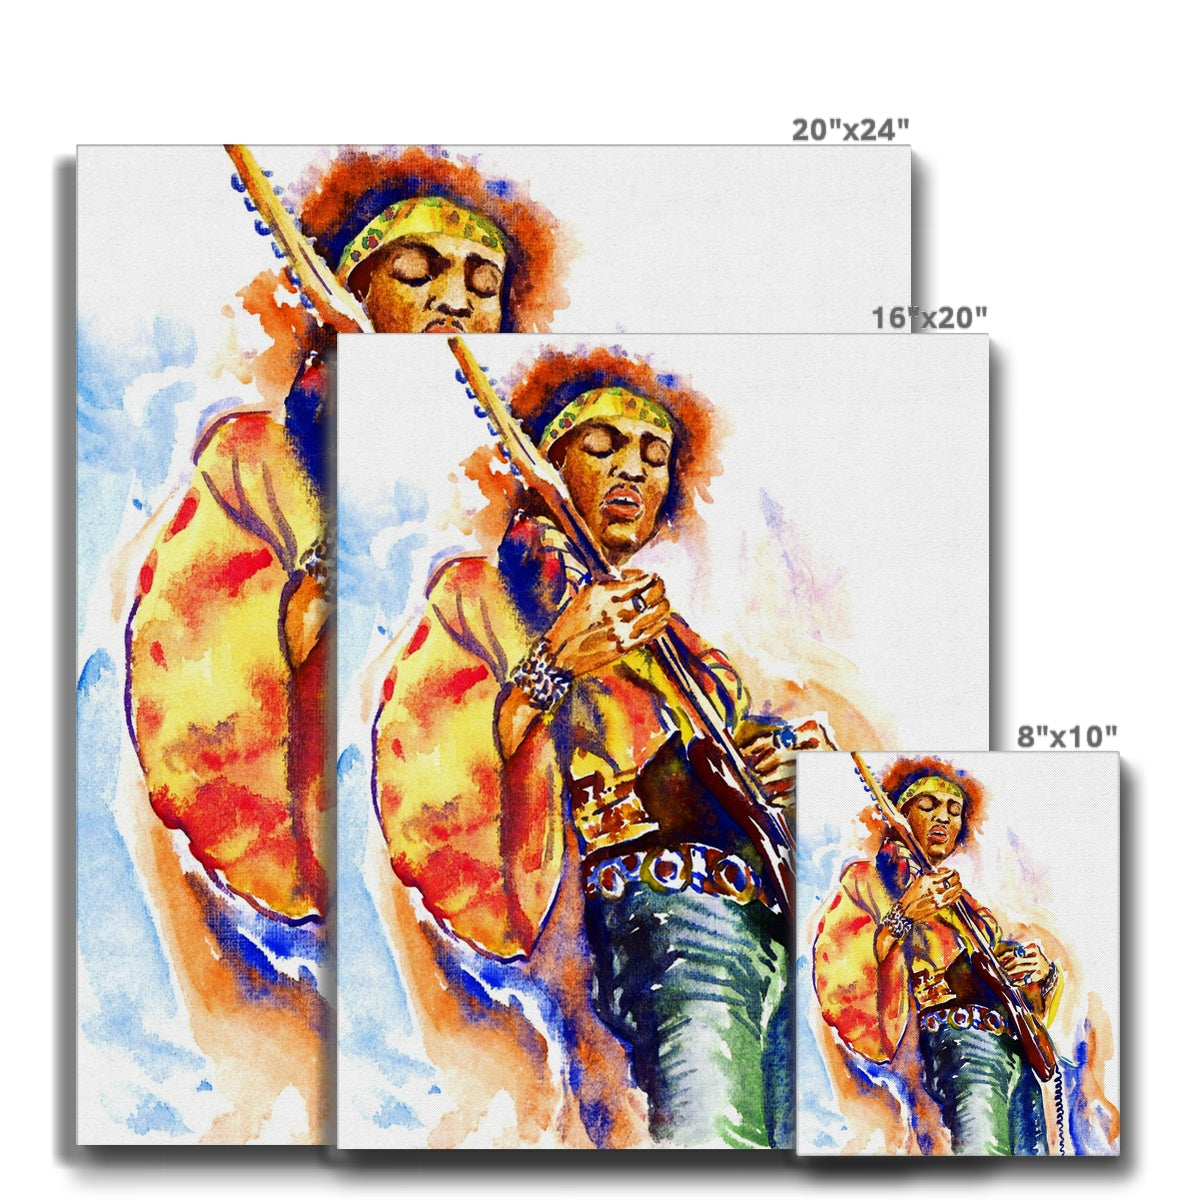 Iconic Hendrix Portrait Canvas